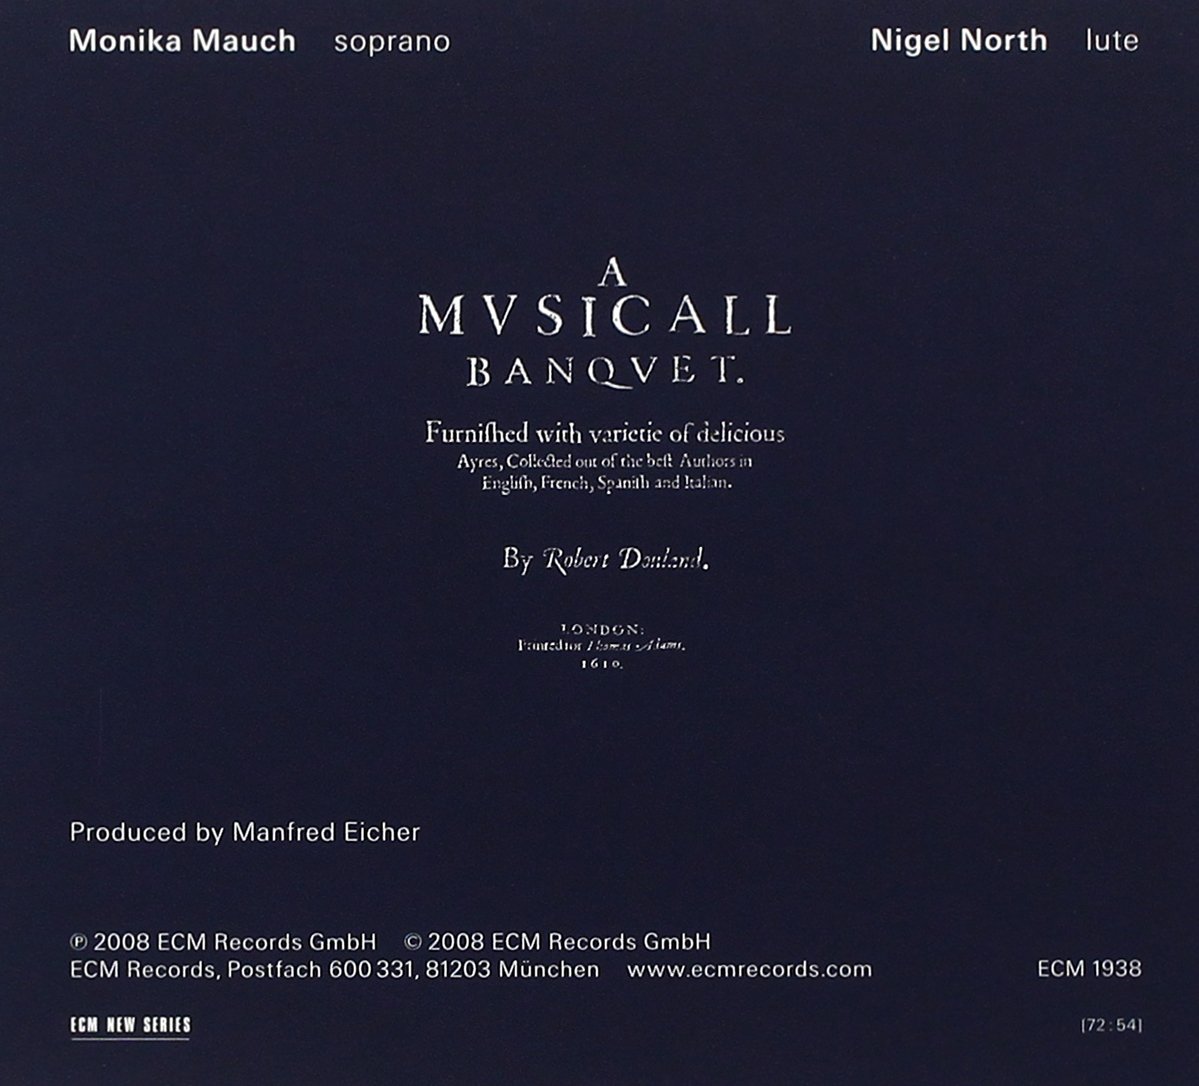 Monika Mauch 다울랜드: 음악의 향연 (Dowland: A Musical Banquet) 